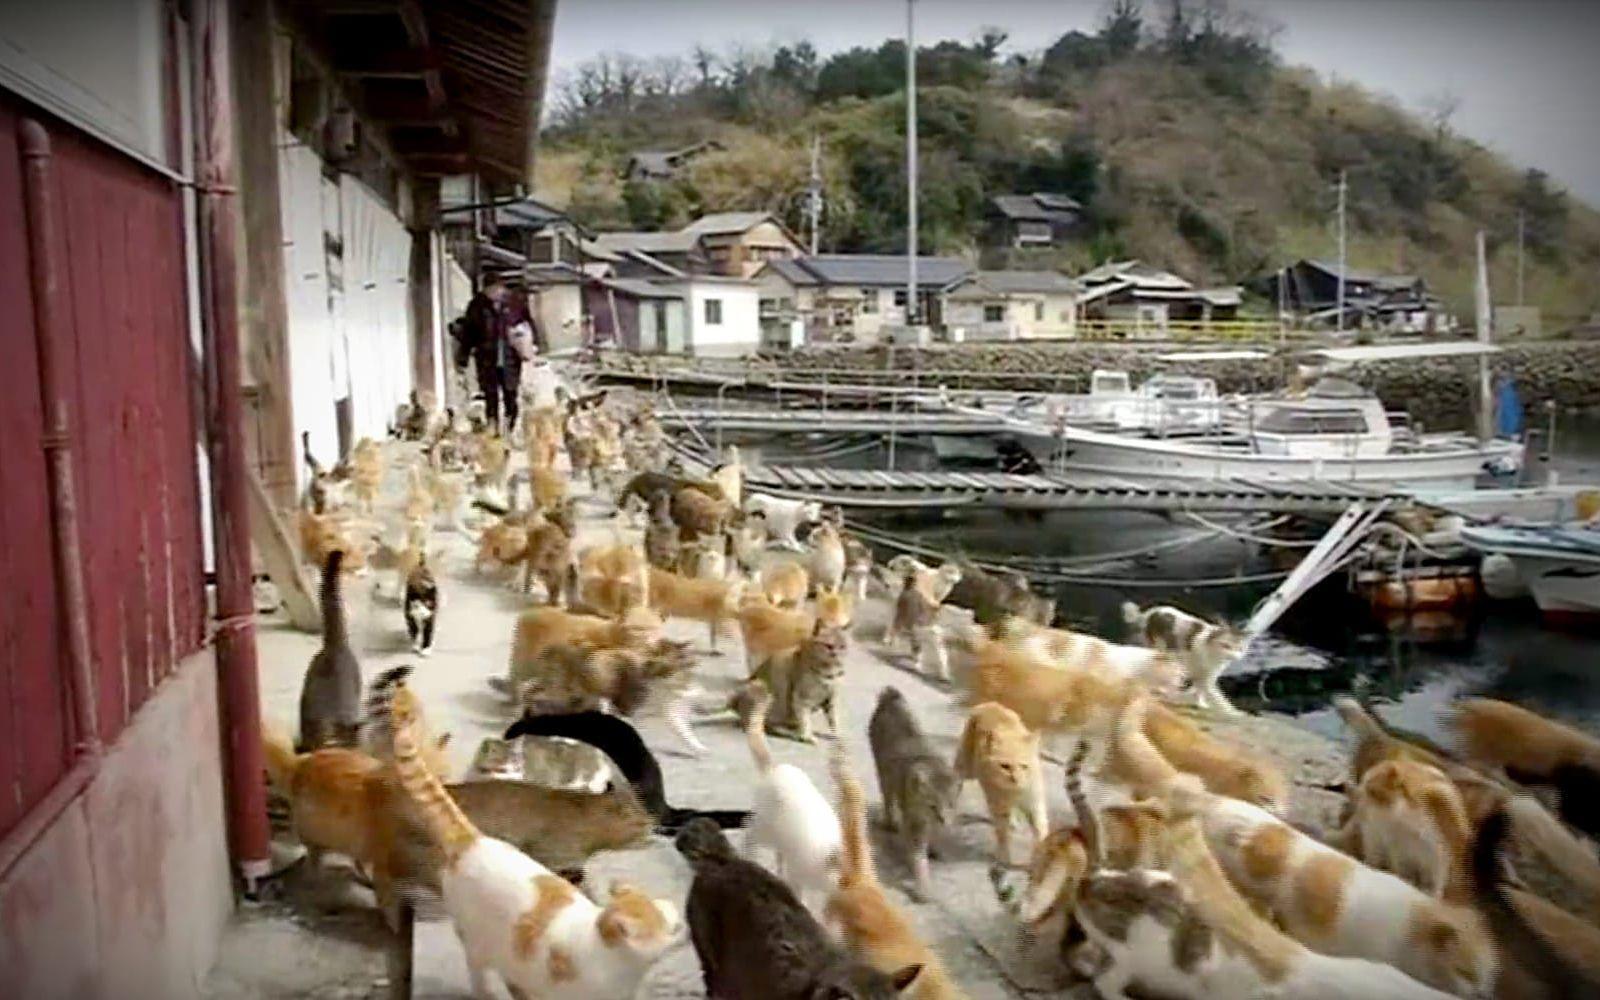 Det finns en ö i Japan som kallas ”kattön” för den oproportionerligt höga andelen katter som lever där. På ön, vars egentliga namn är Aoshima, bor över 100 katter men bara cirka 20 människor.